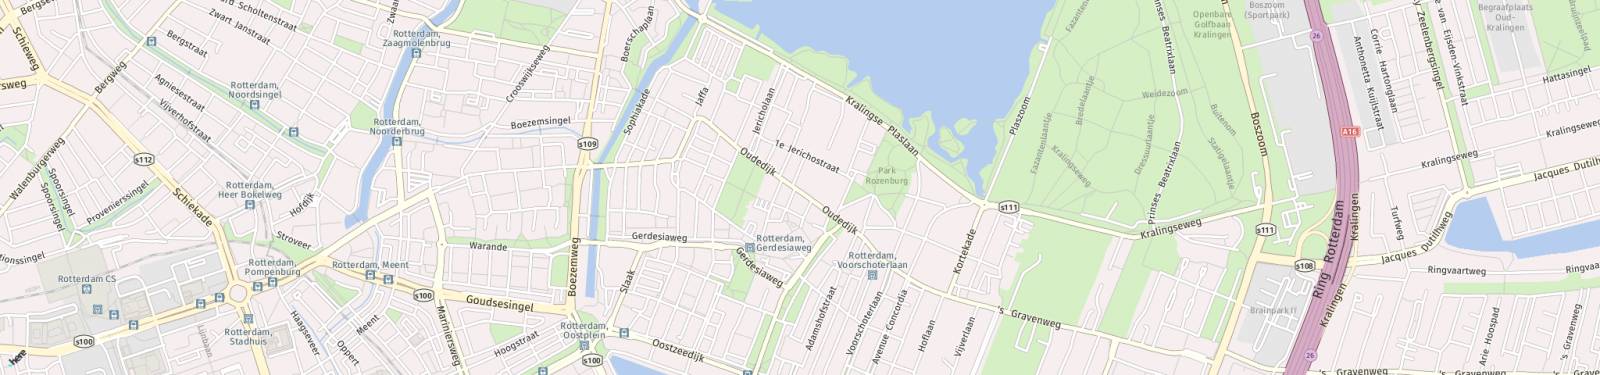 Kaart met locatie Appartement Oudedijk